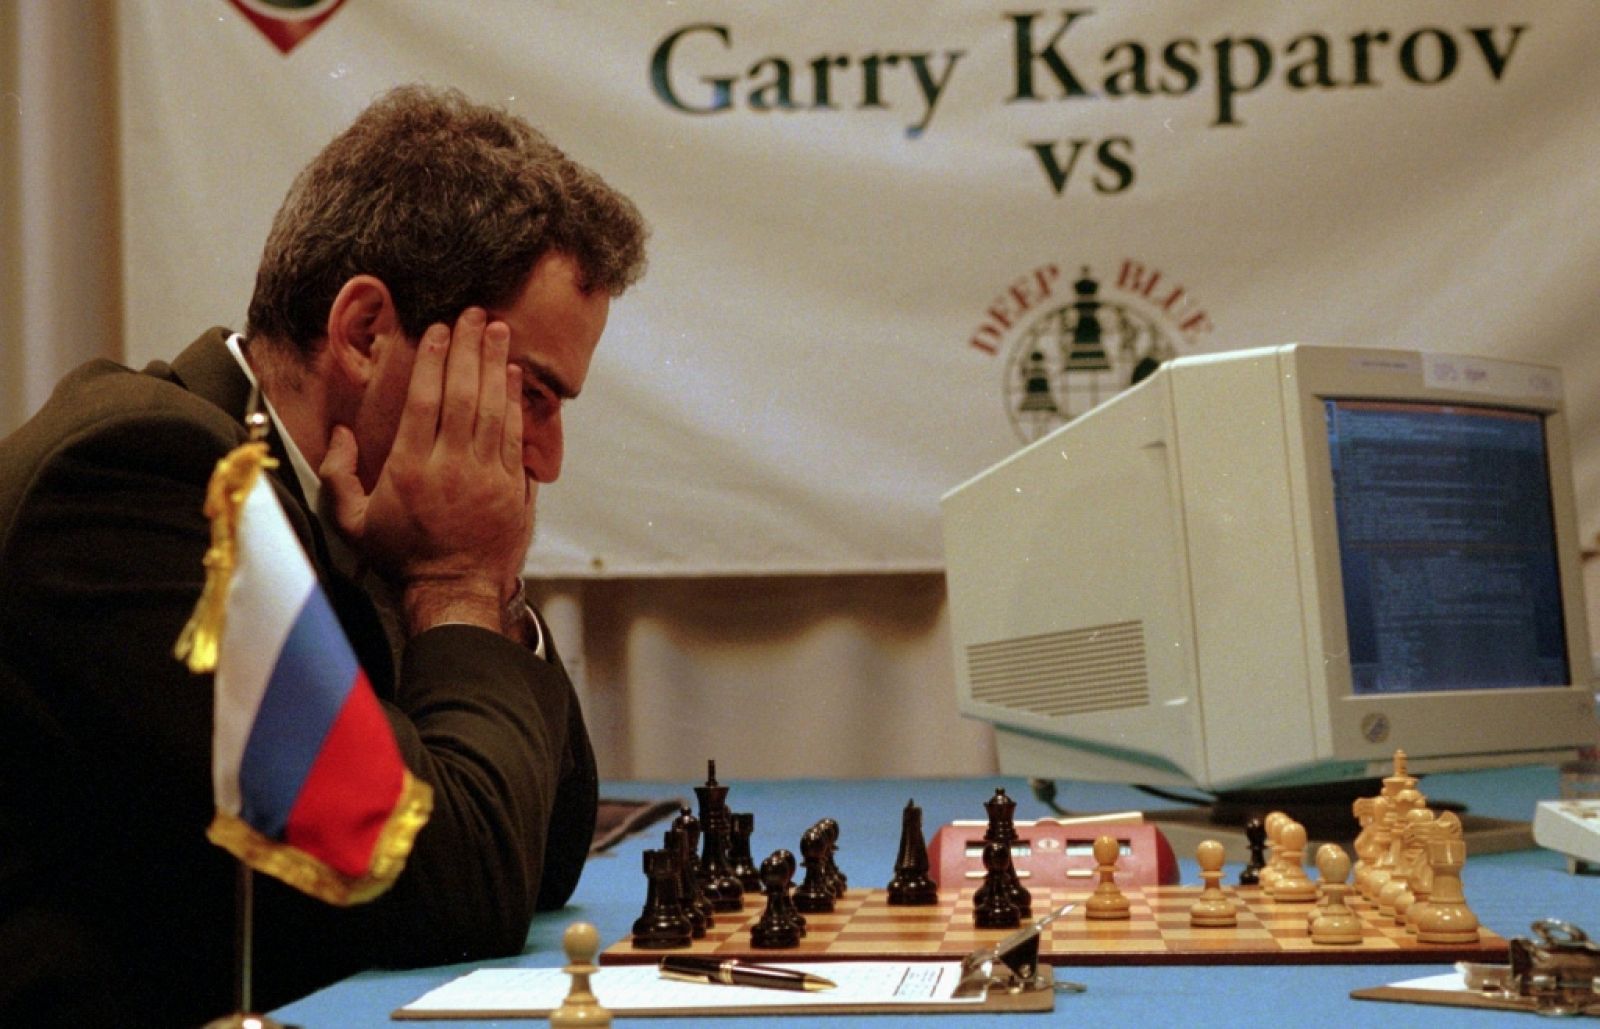 Clube de Xadrez Marabá: GAME OVER – KASPAROV E A MAQUINA 2004